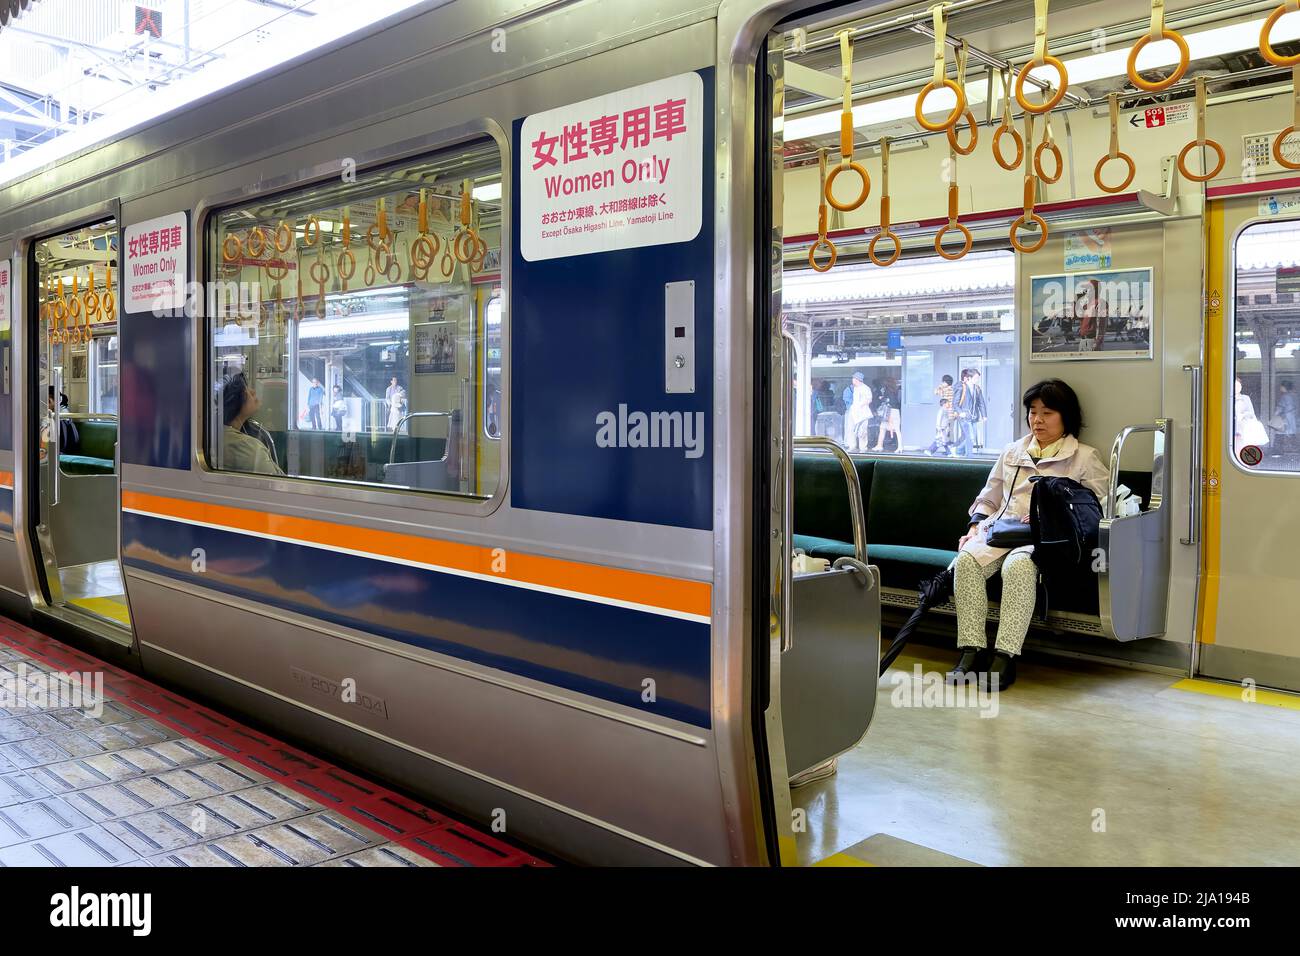 Japon. Kyoto. Chariot de train pour femmes seulement Banque D'Images